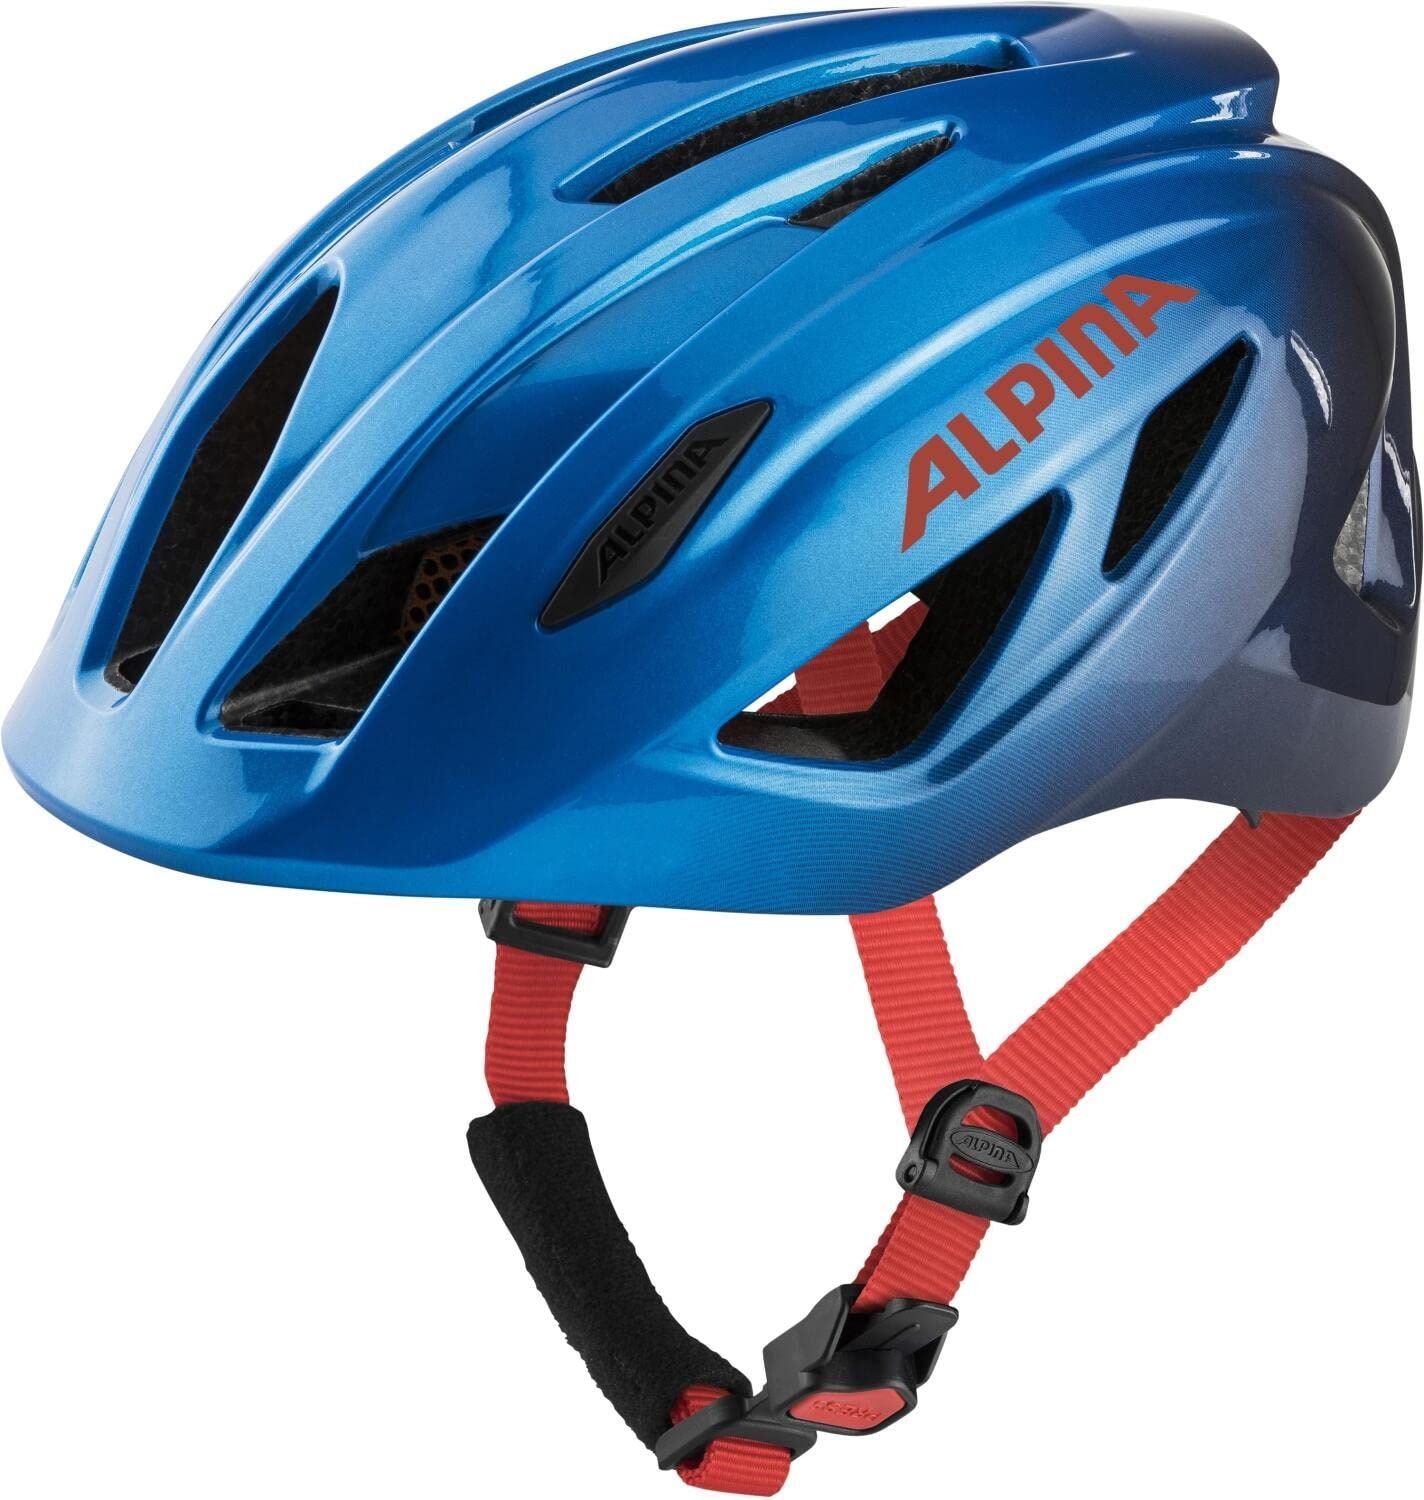 ALPINA PICO - Leichter, Optimal Klimatisierter & Bruchfester Fahrradhelm Mit Fliegennetz Für Kinder, true blue gloss, 50-55 cm